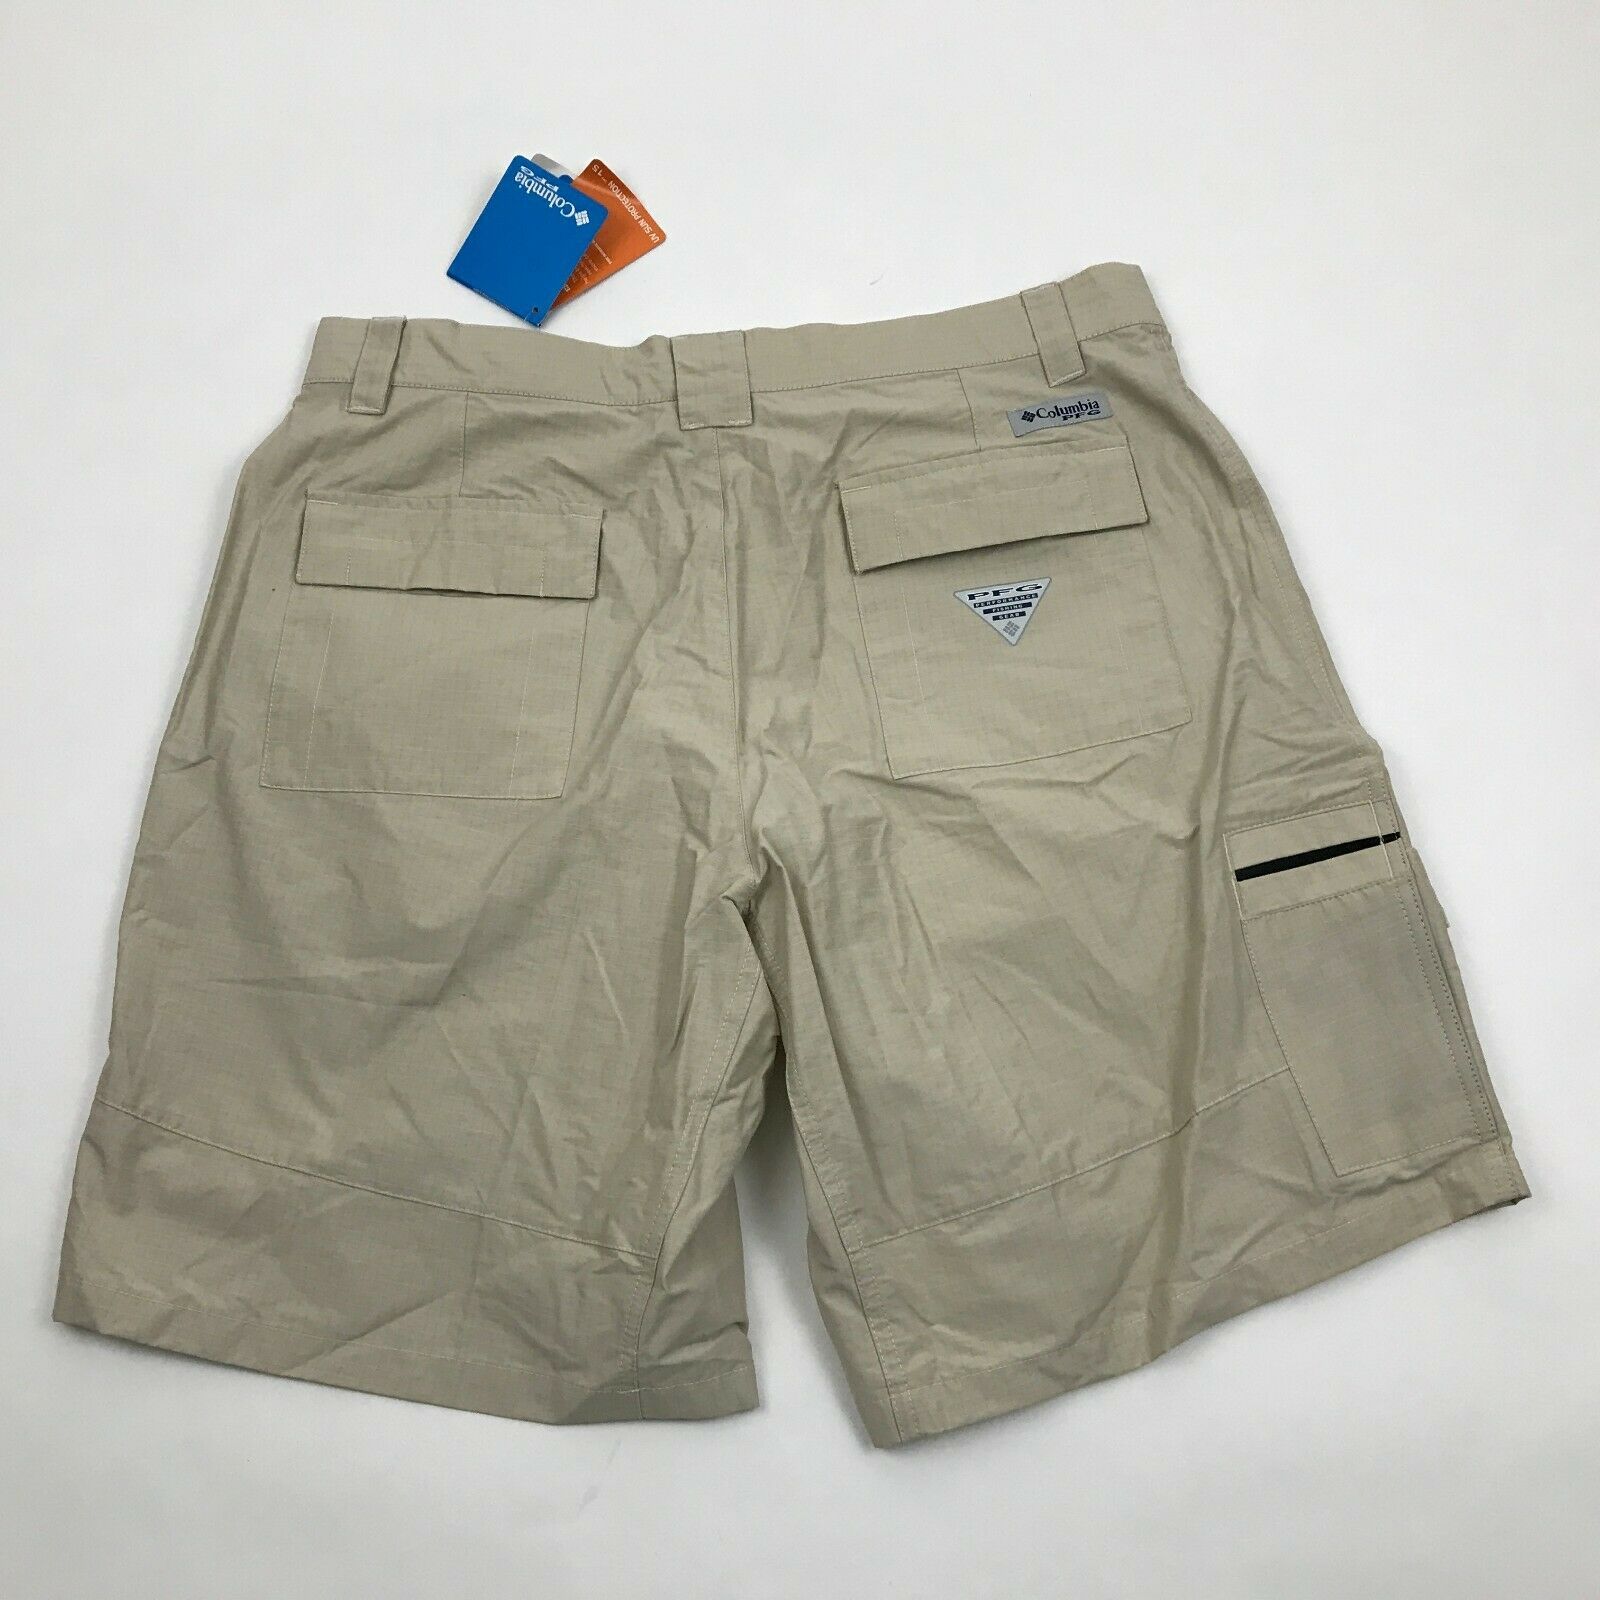 NEW Columbia PFG Shorts Men's Size 36 Waist Utility Pocket UPF 15 UV ...